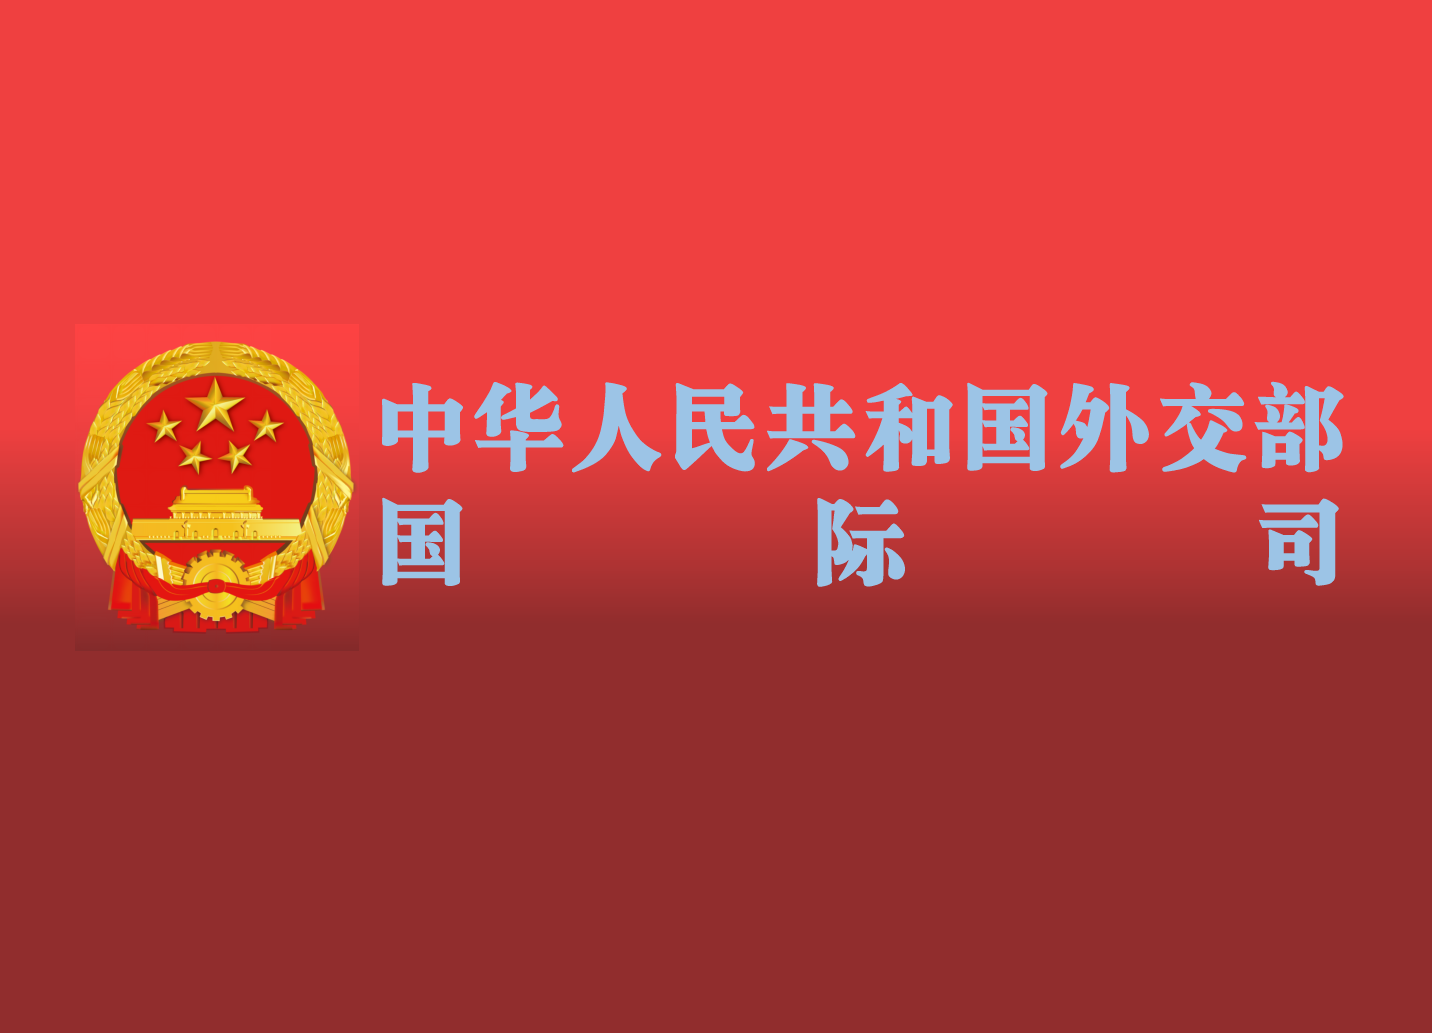 中華人民共和國外交部國際司